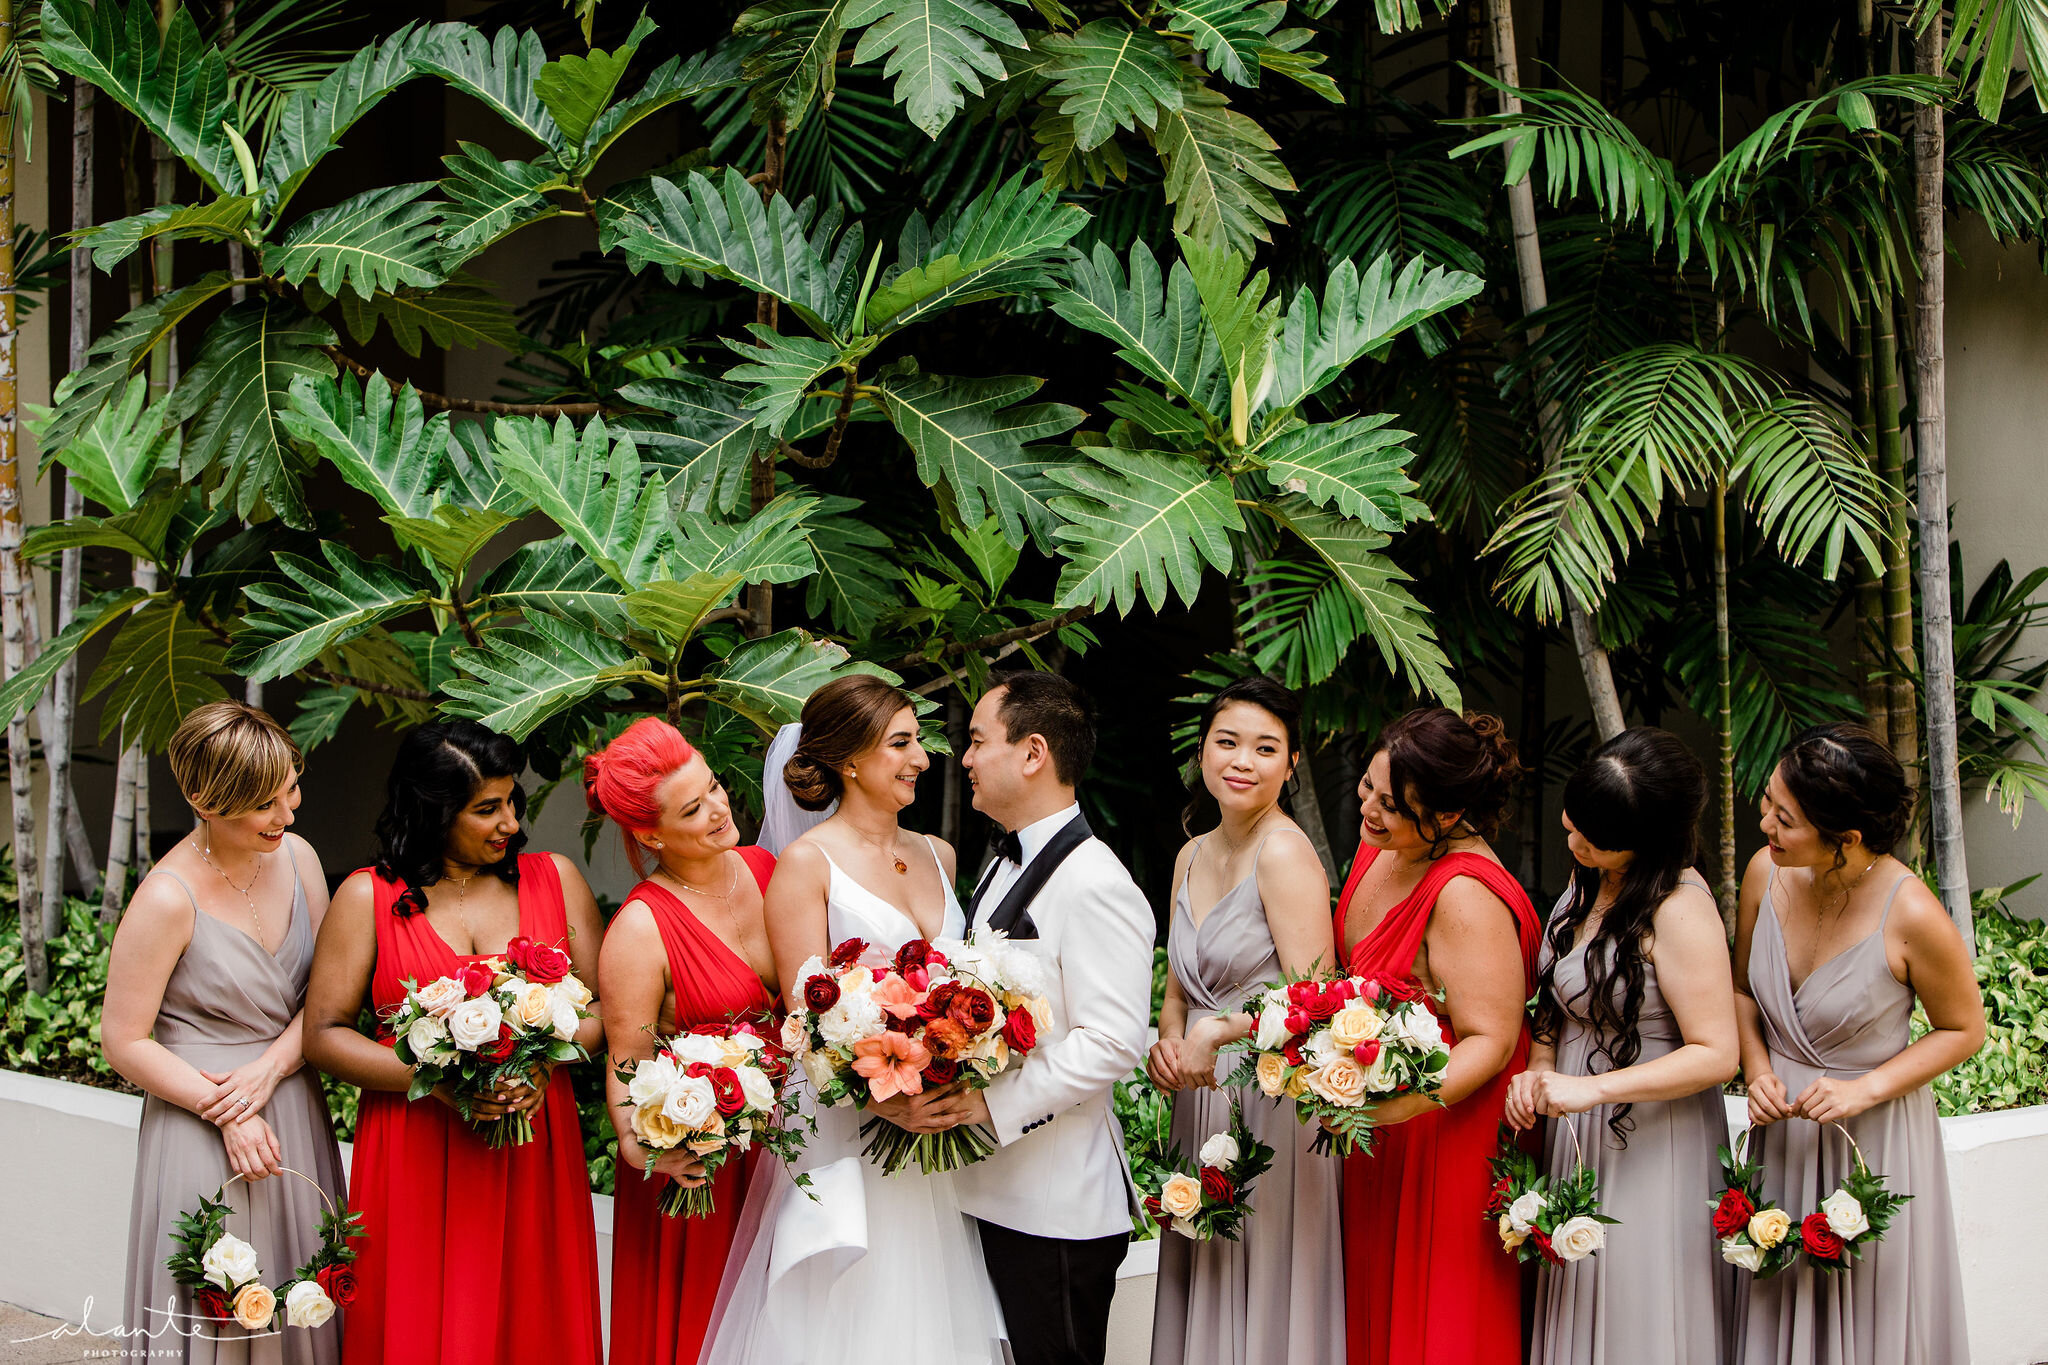 Alante-Photography-Hawaii-Honolulu-Wedding-028.jpg